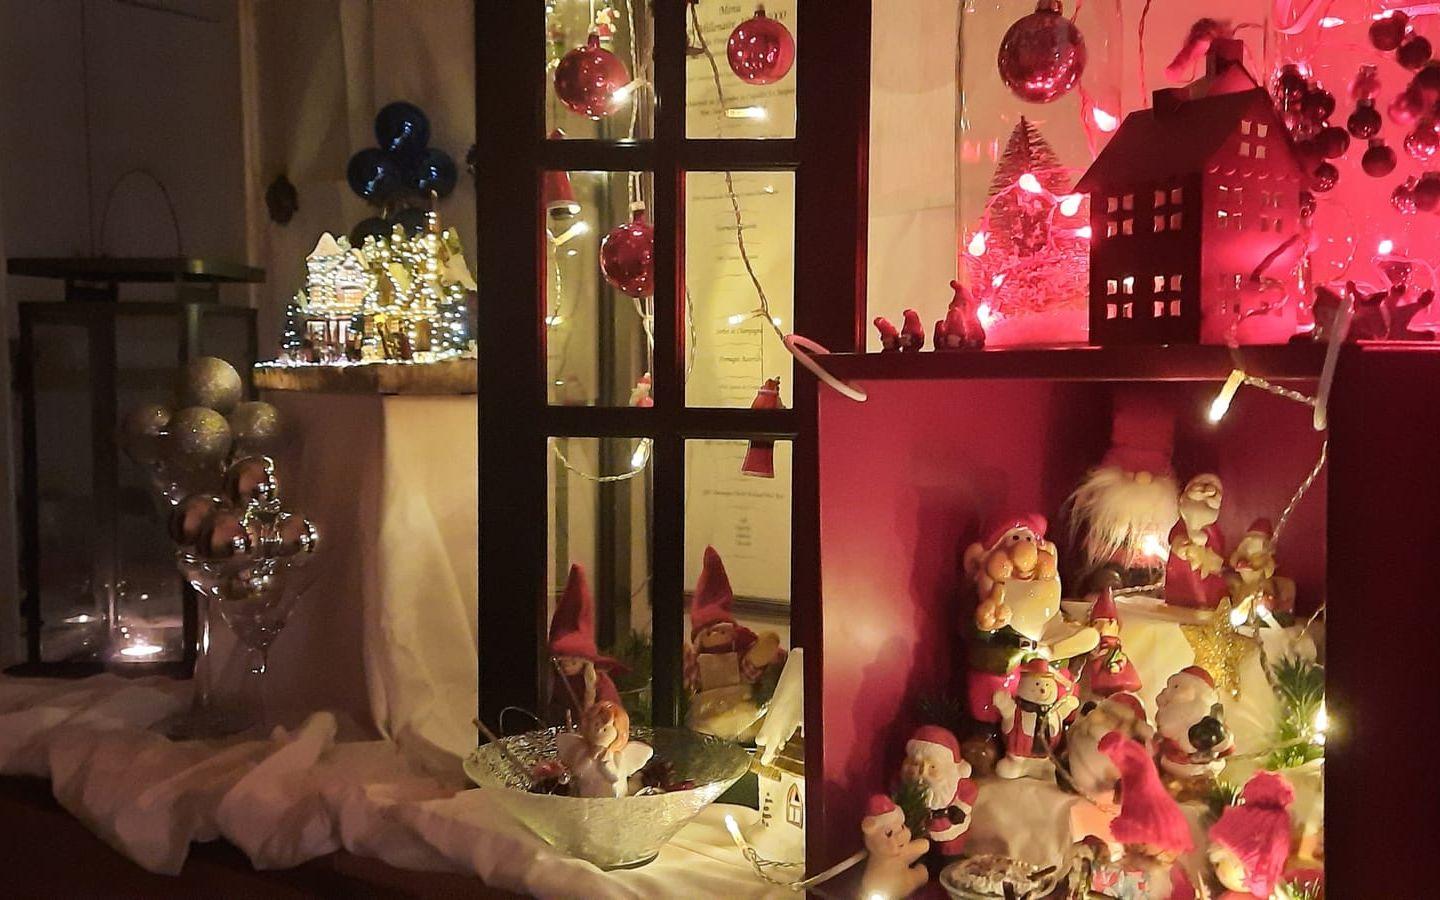 ”Det är alltid mysigt och roligt att bygga upp en liten julstad, hemma i hallen på Bohusgården.”